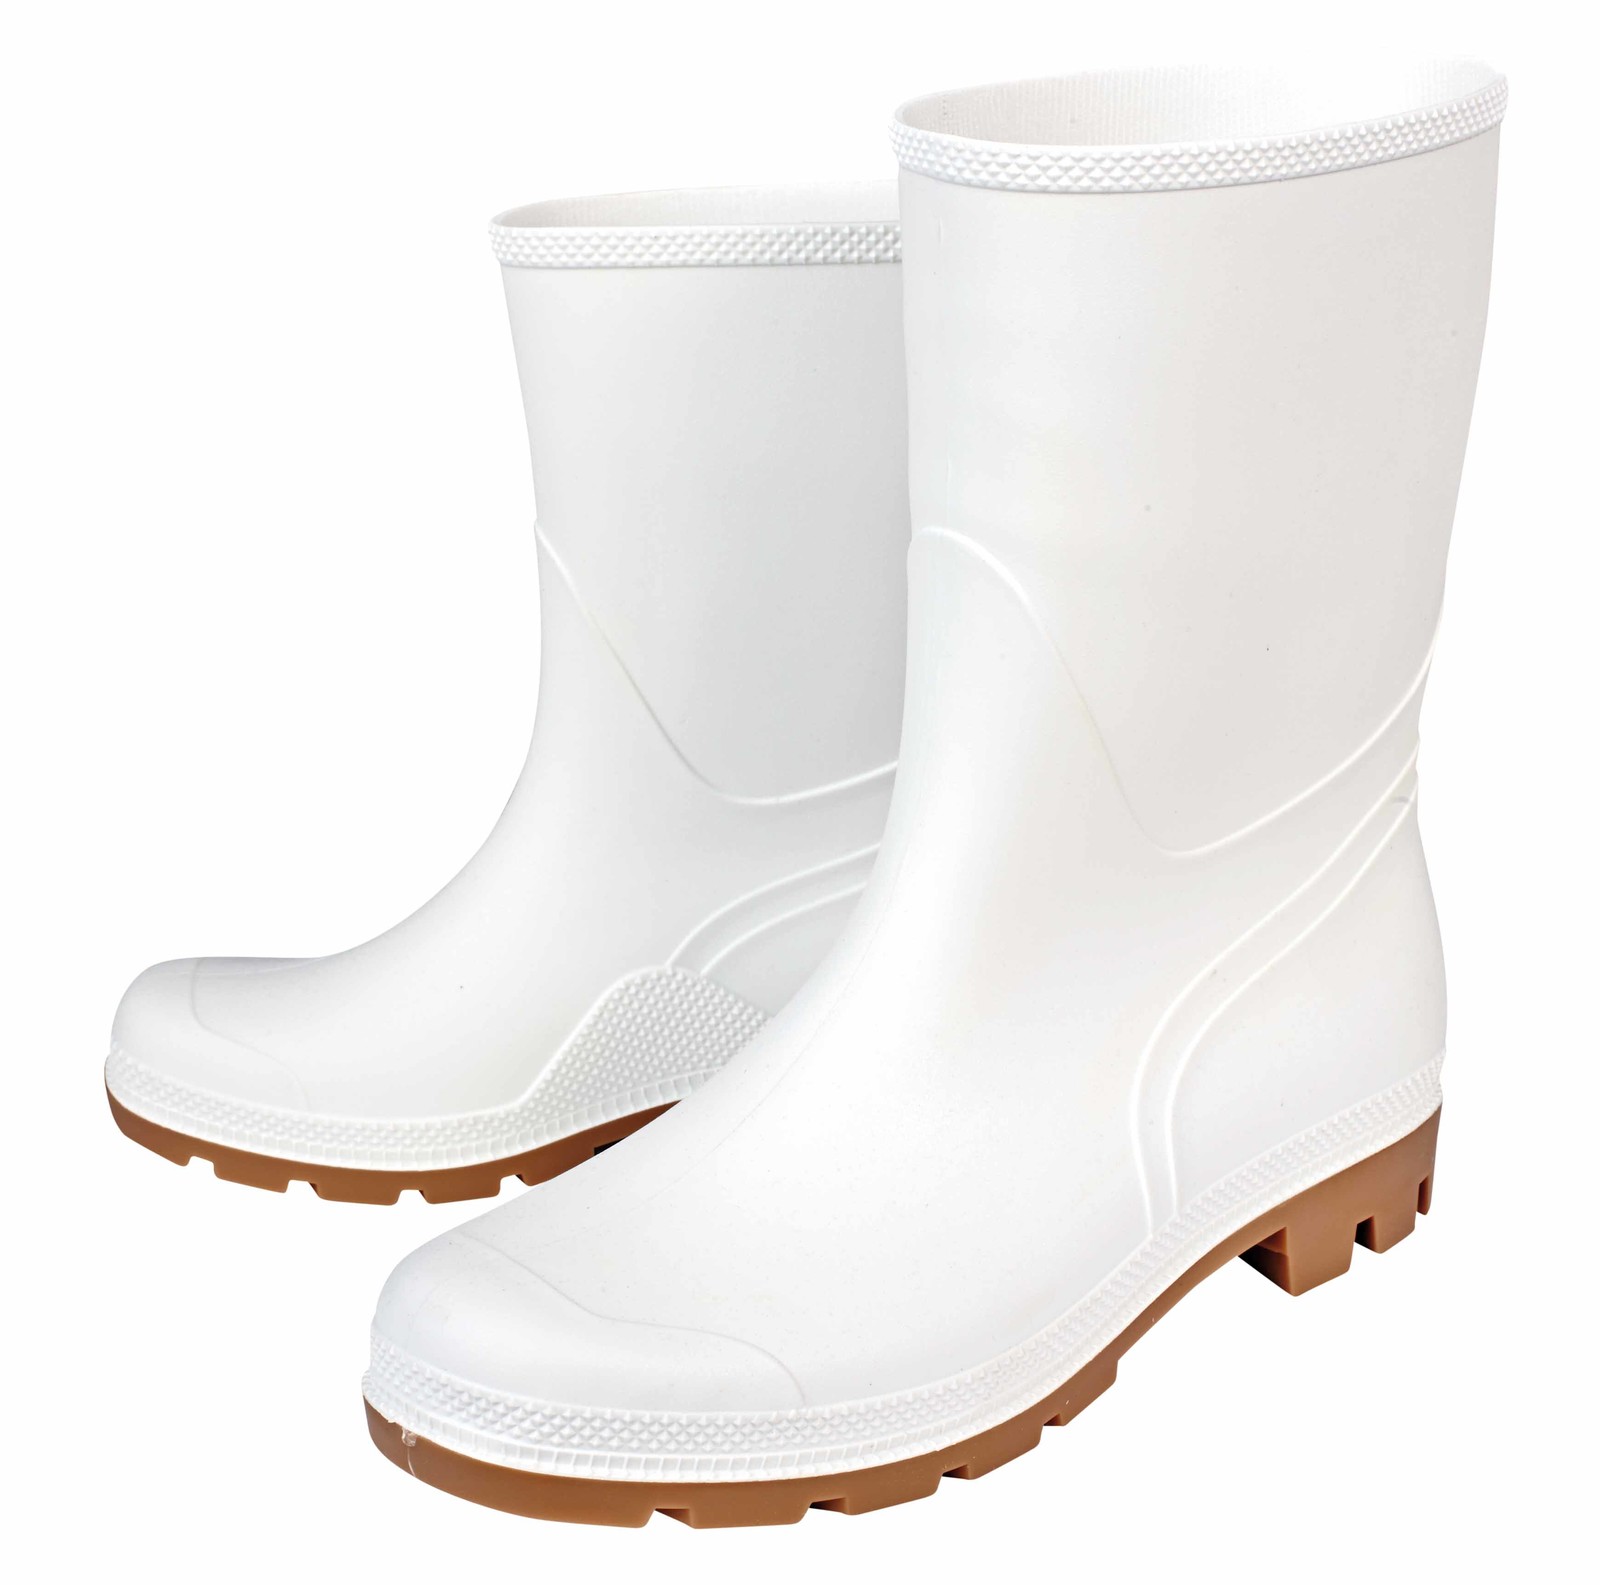 Gumáky Boots Troncheto PVC nízke - veľkosť: 39, farba: biela